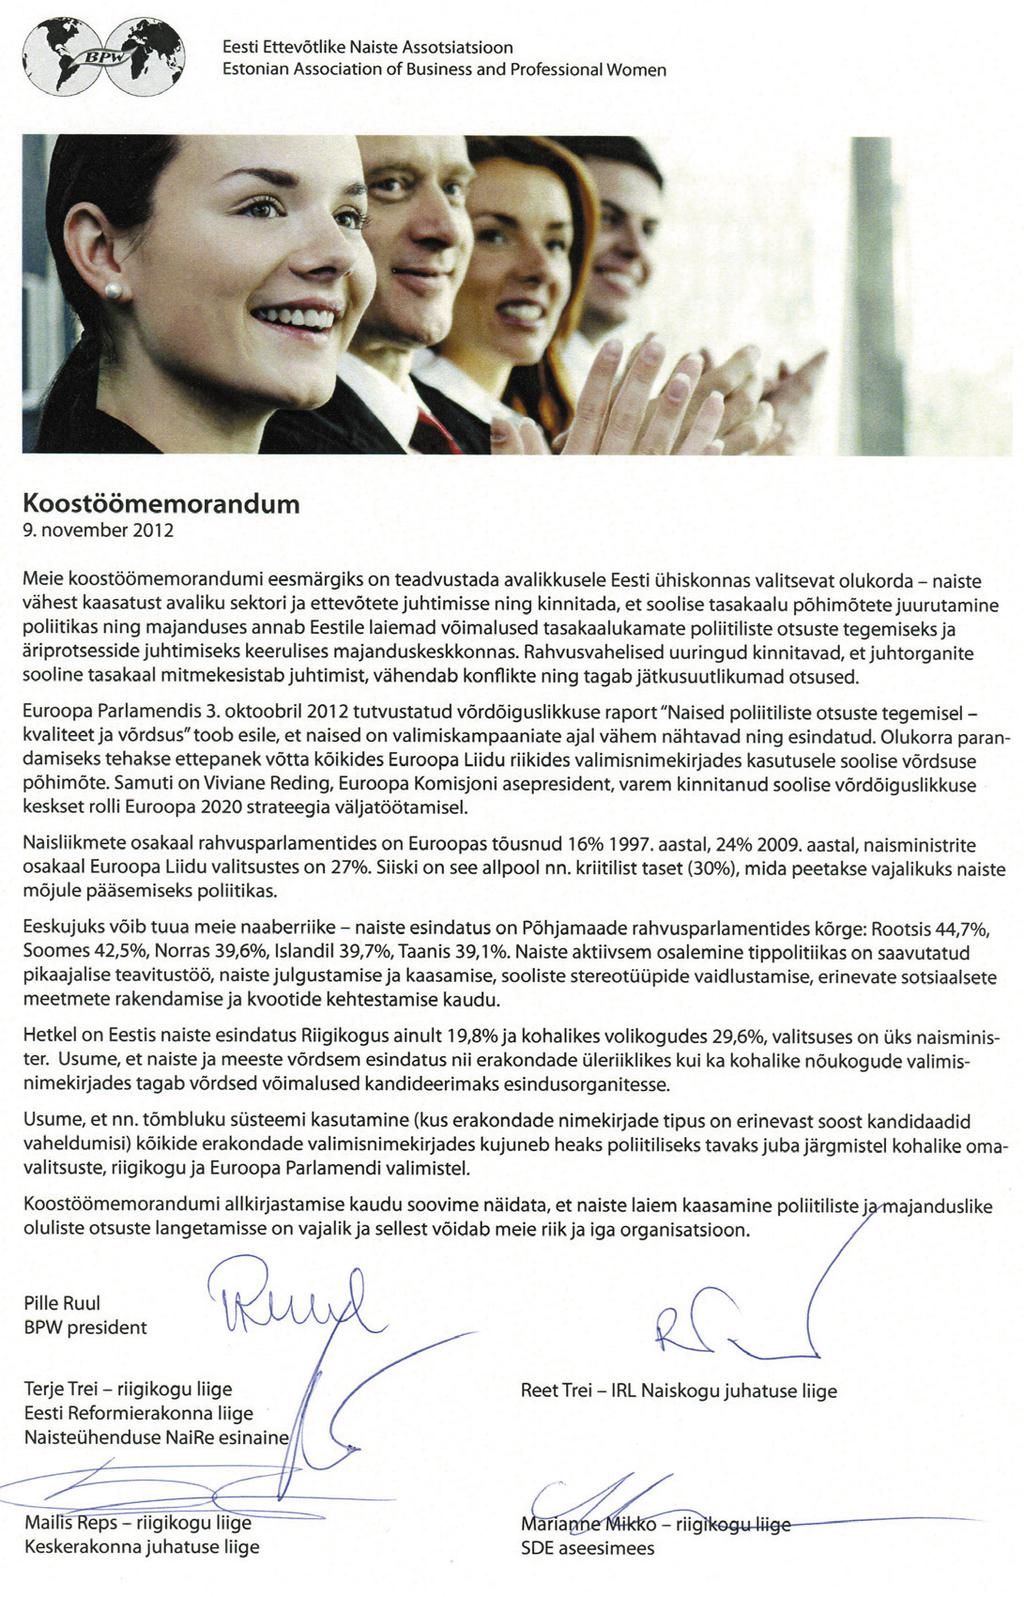 Sirje Rist SEPPER, M.-L. (2013). Kas kandidaadil on sugu? Eesti Päevaleht, 4. oktoober. http://epl.delfi.ee/news/arvamus/mari-liissepper-kas-kandidaadil-on-sugu?id=66840269 THAMES, F. C., WILLIAMS, M.